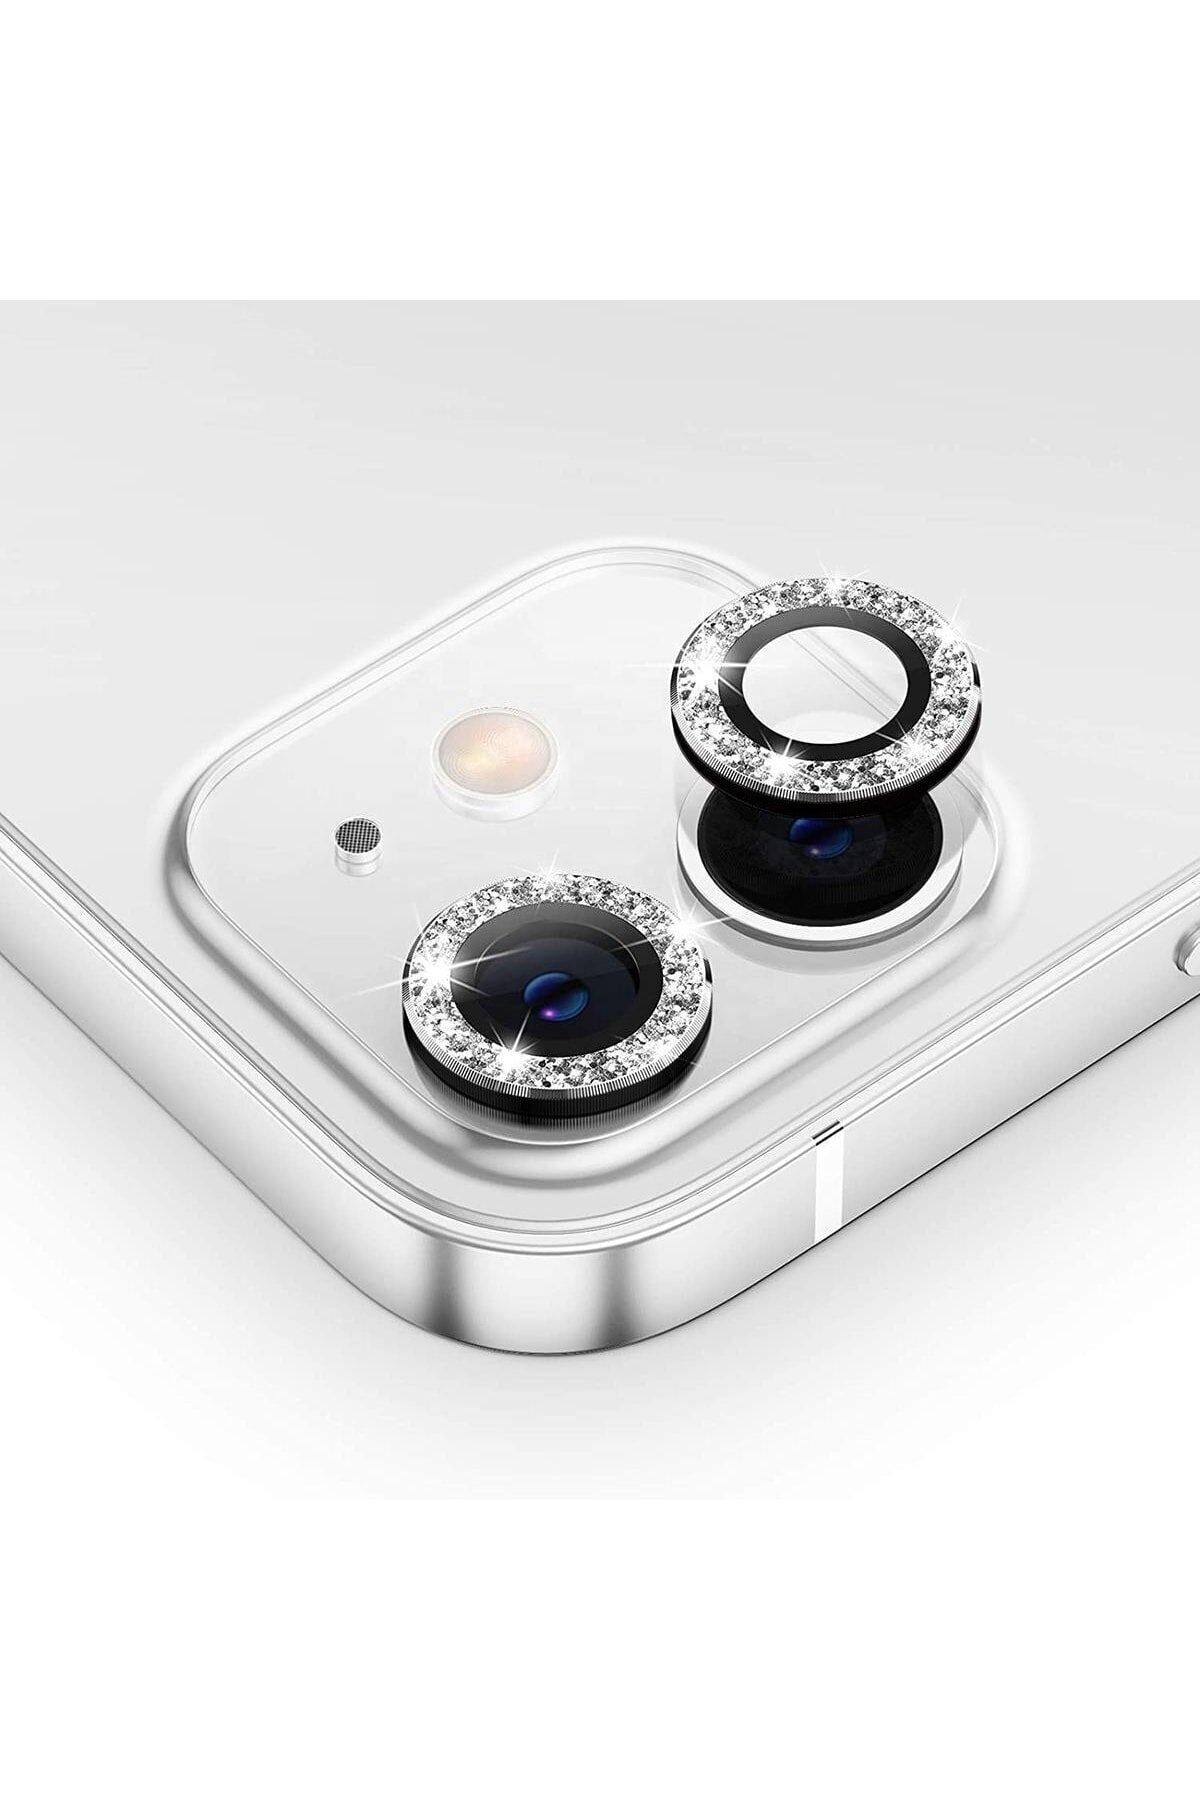 TrendCell Iphone 11 / Iphone 12 Uyumlu Mini/iphone 12 Uyumlu Swarovski Taşlı Kamera Lens Koruyucu Mercek Siyah